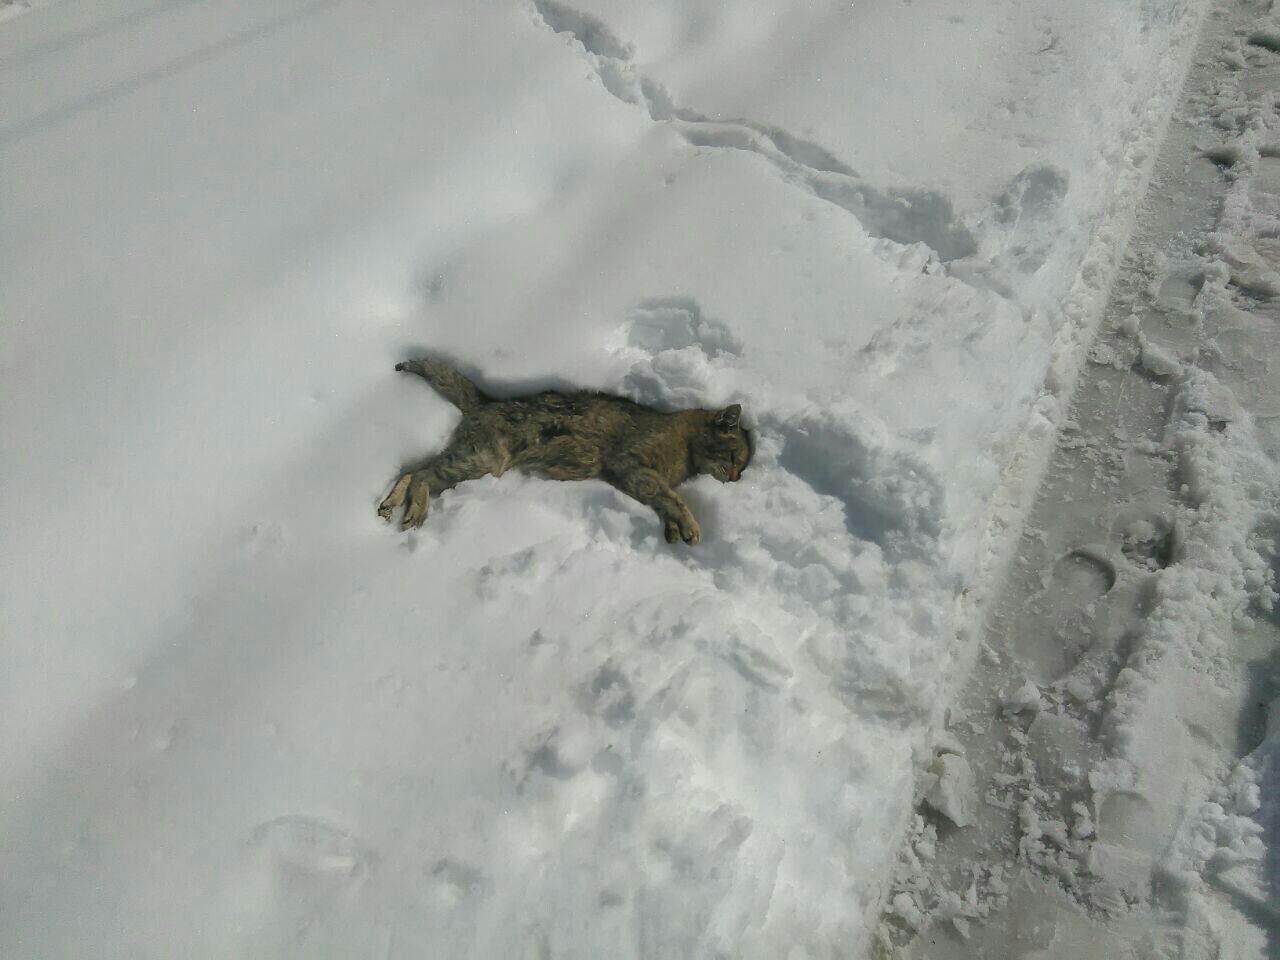 مرگ غم انگیز گربه در سرمای شدید فیروزکوه +عکس